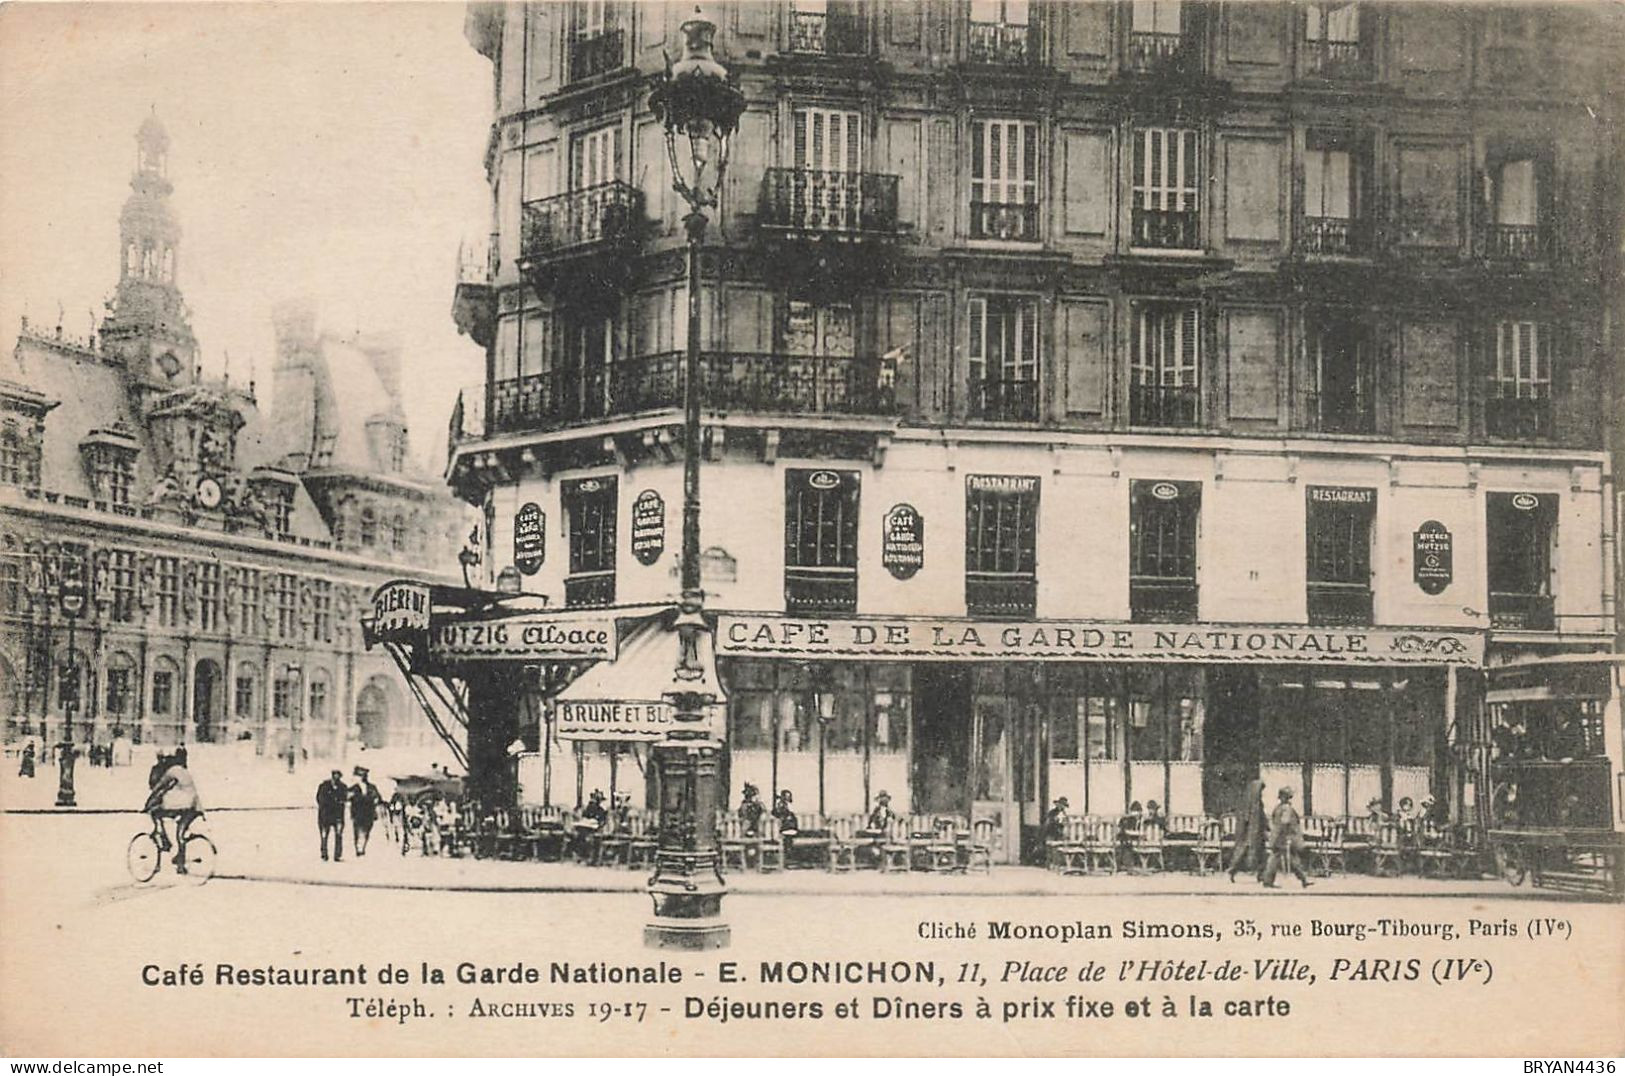 PARIS 16 ème - CAFE RESTAURANT De La GARDE NATIONALE - 11, PLACE De L( HOTEL De VILLE - CARTE POSTALE MENU (9x14cm) - Distretto: 04